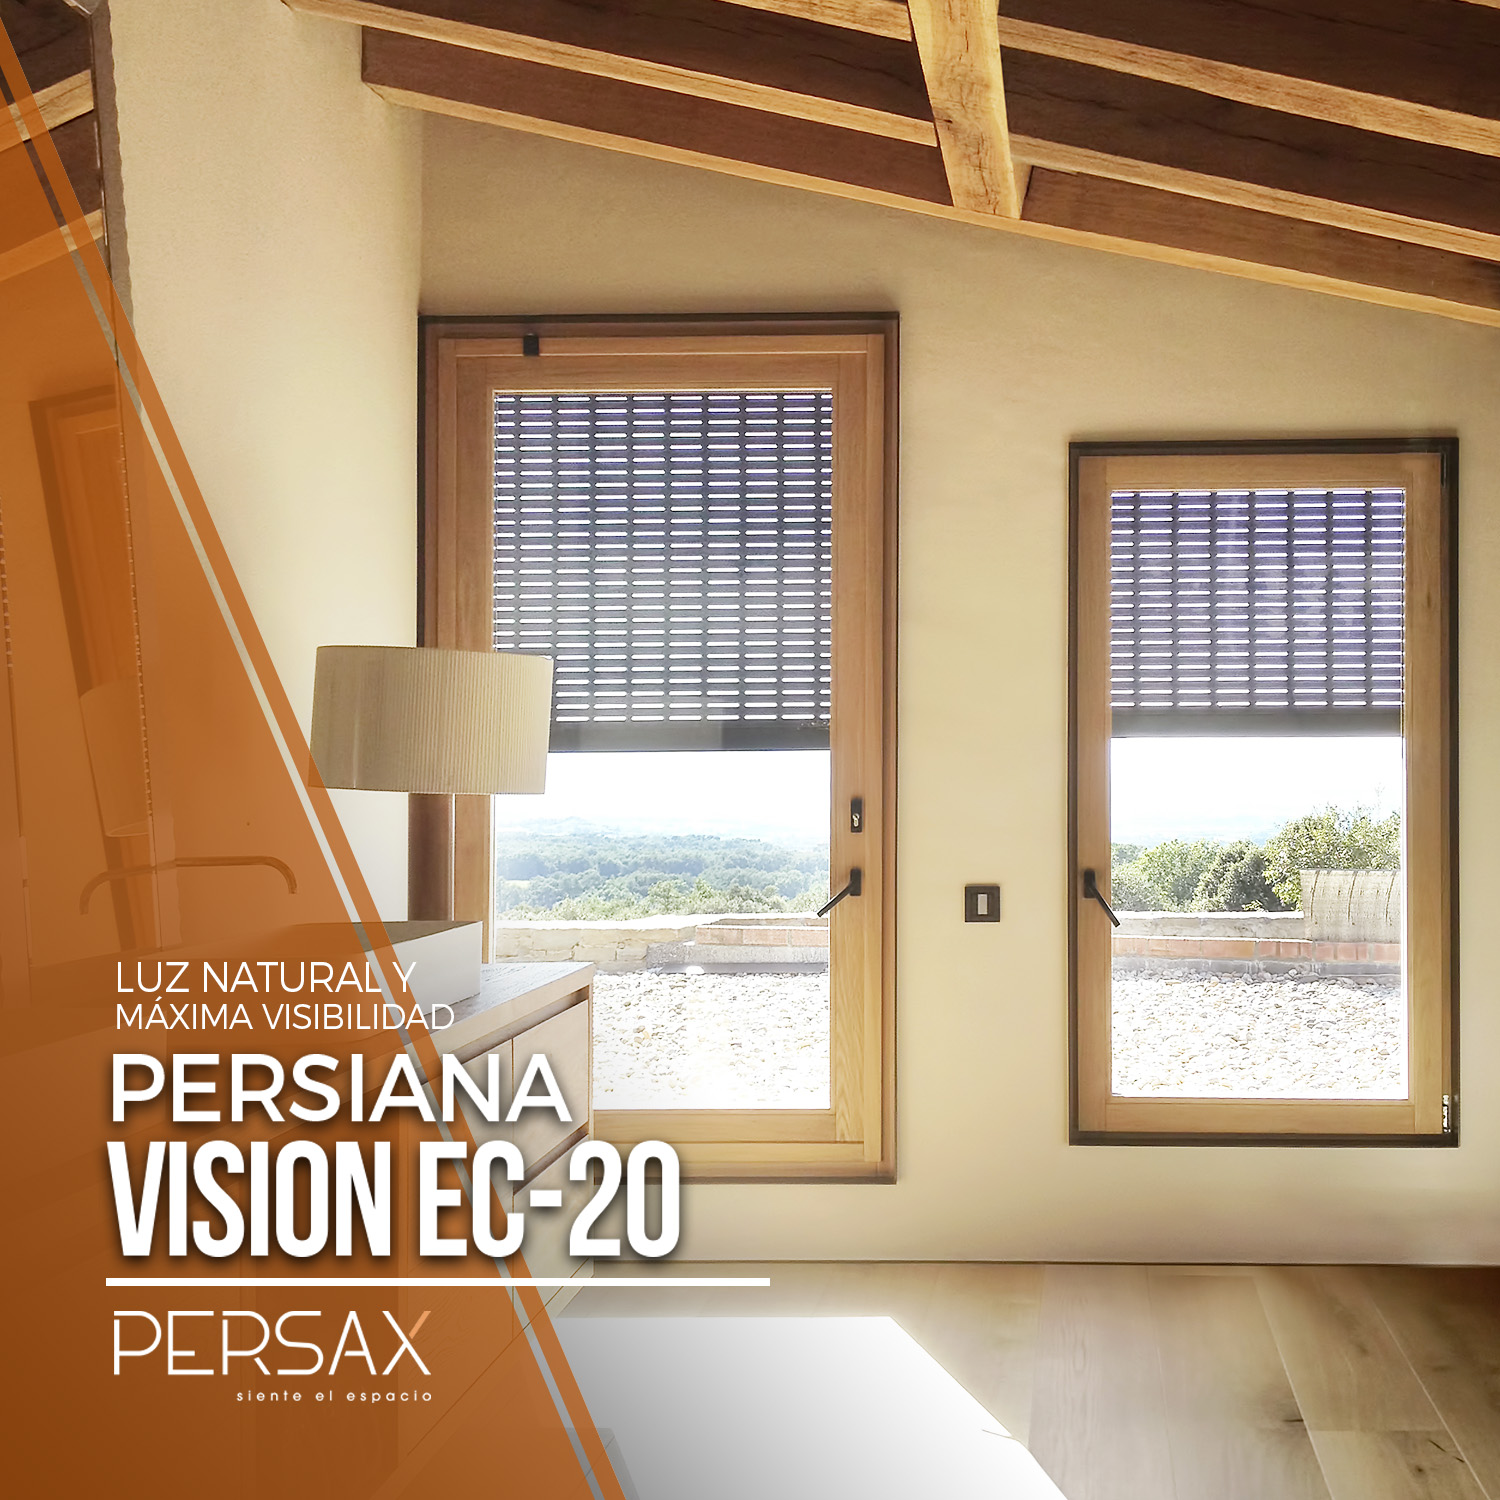 VISION EC-20 de Persax